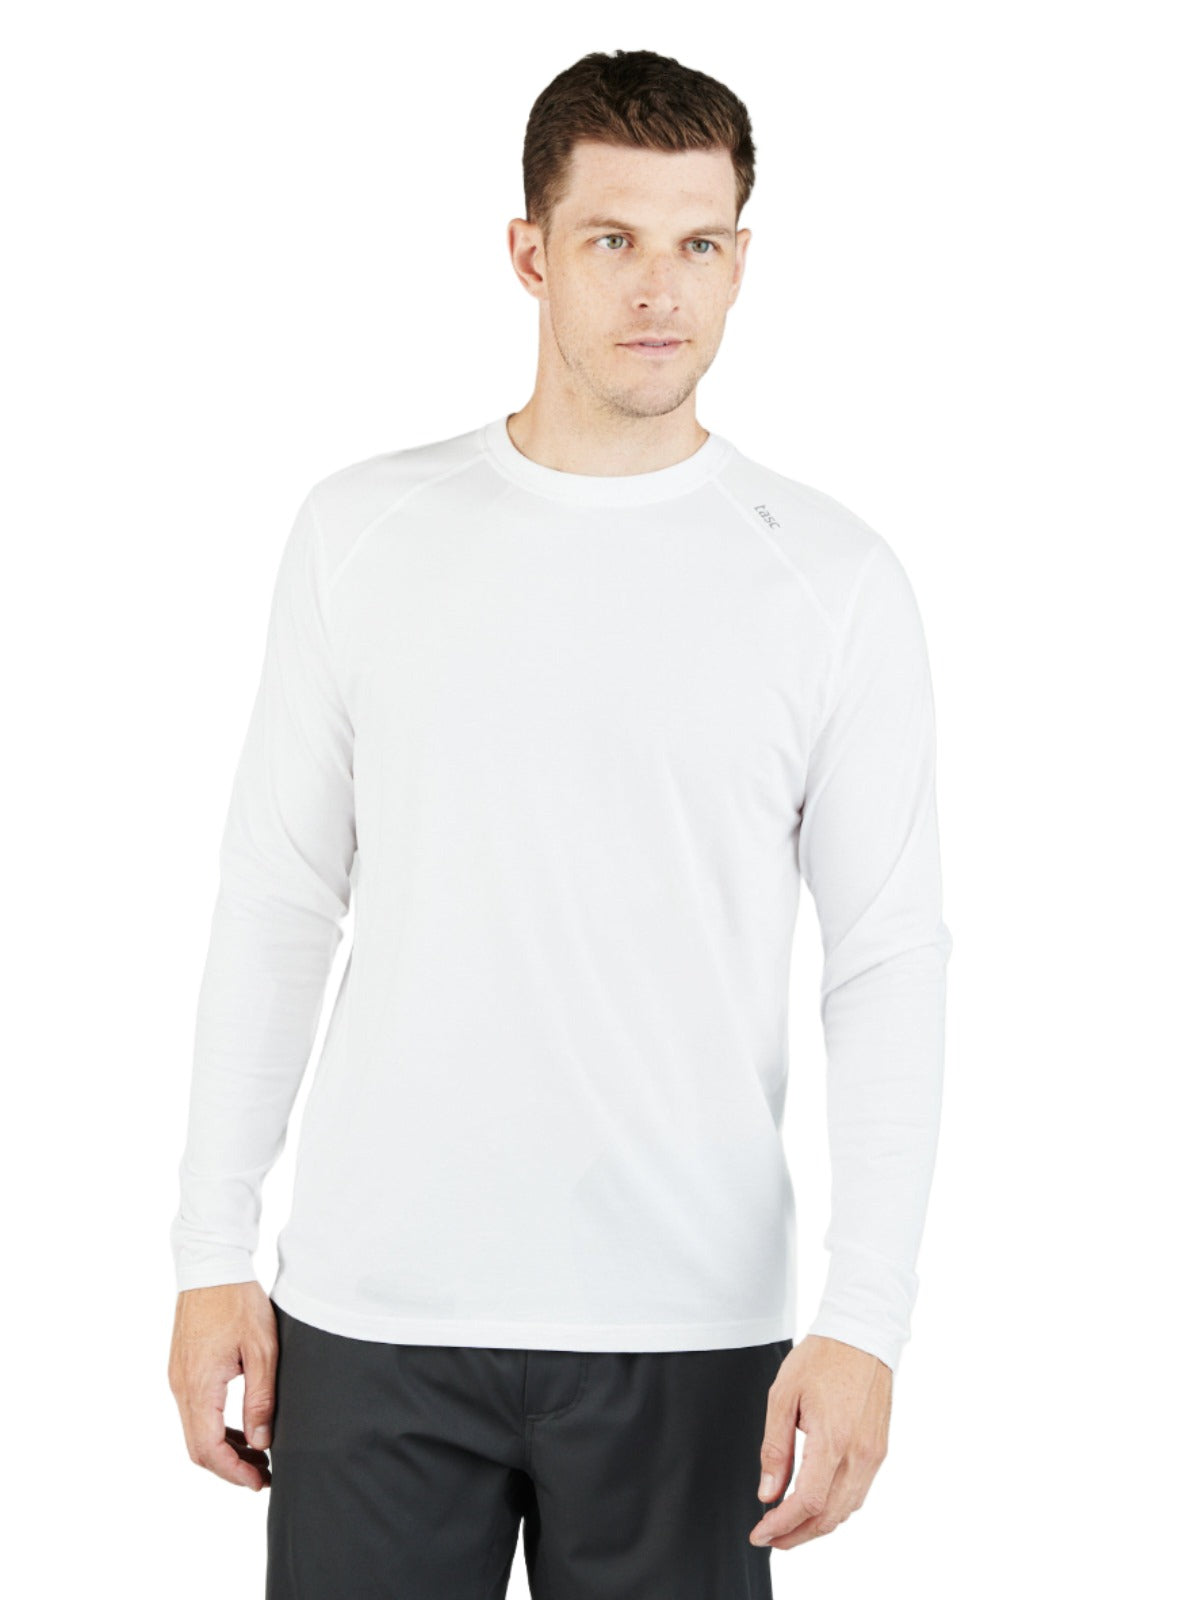 Tasc Men's Carrollton Long Sleeve Fitness T-Shirt Apparel Tasc White-100 Small 